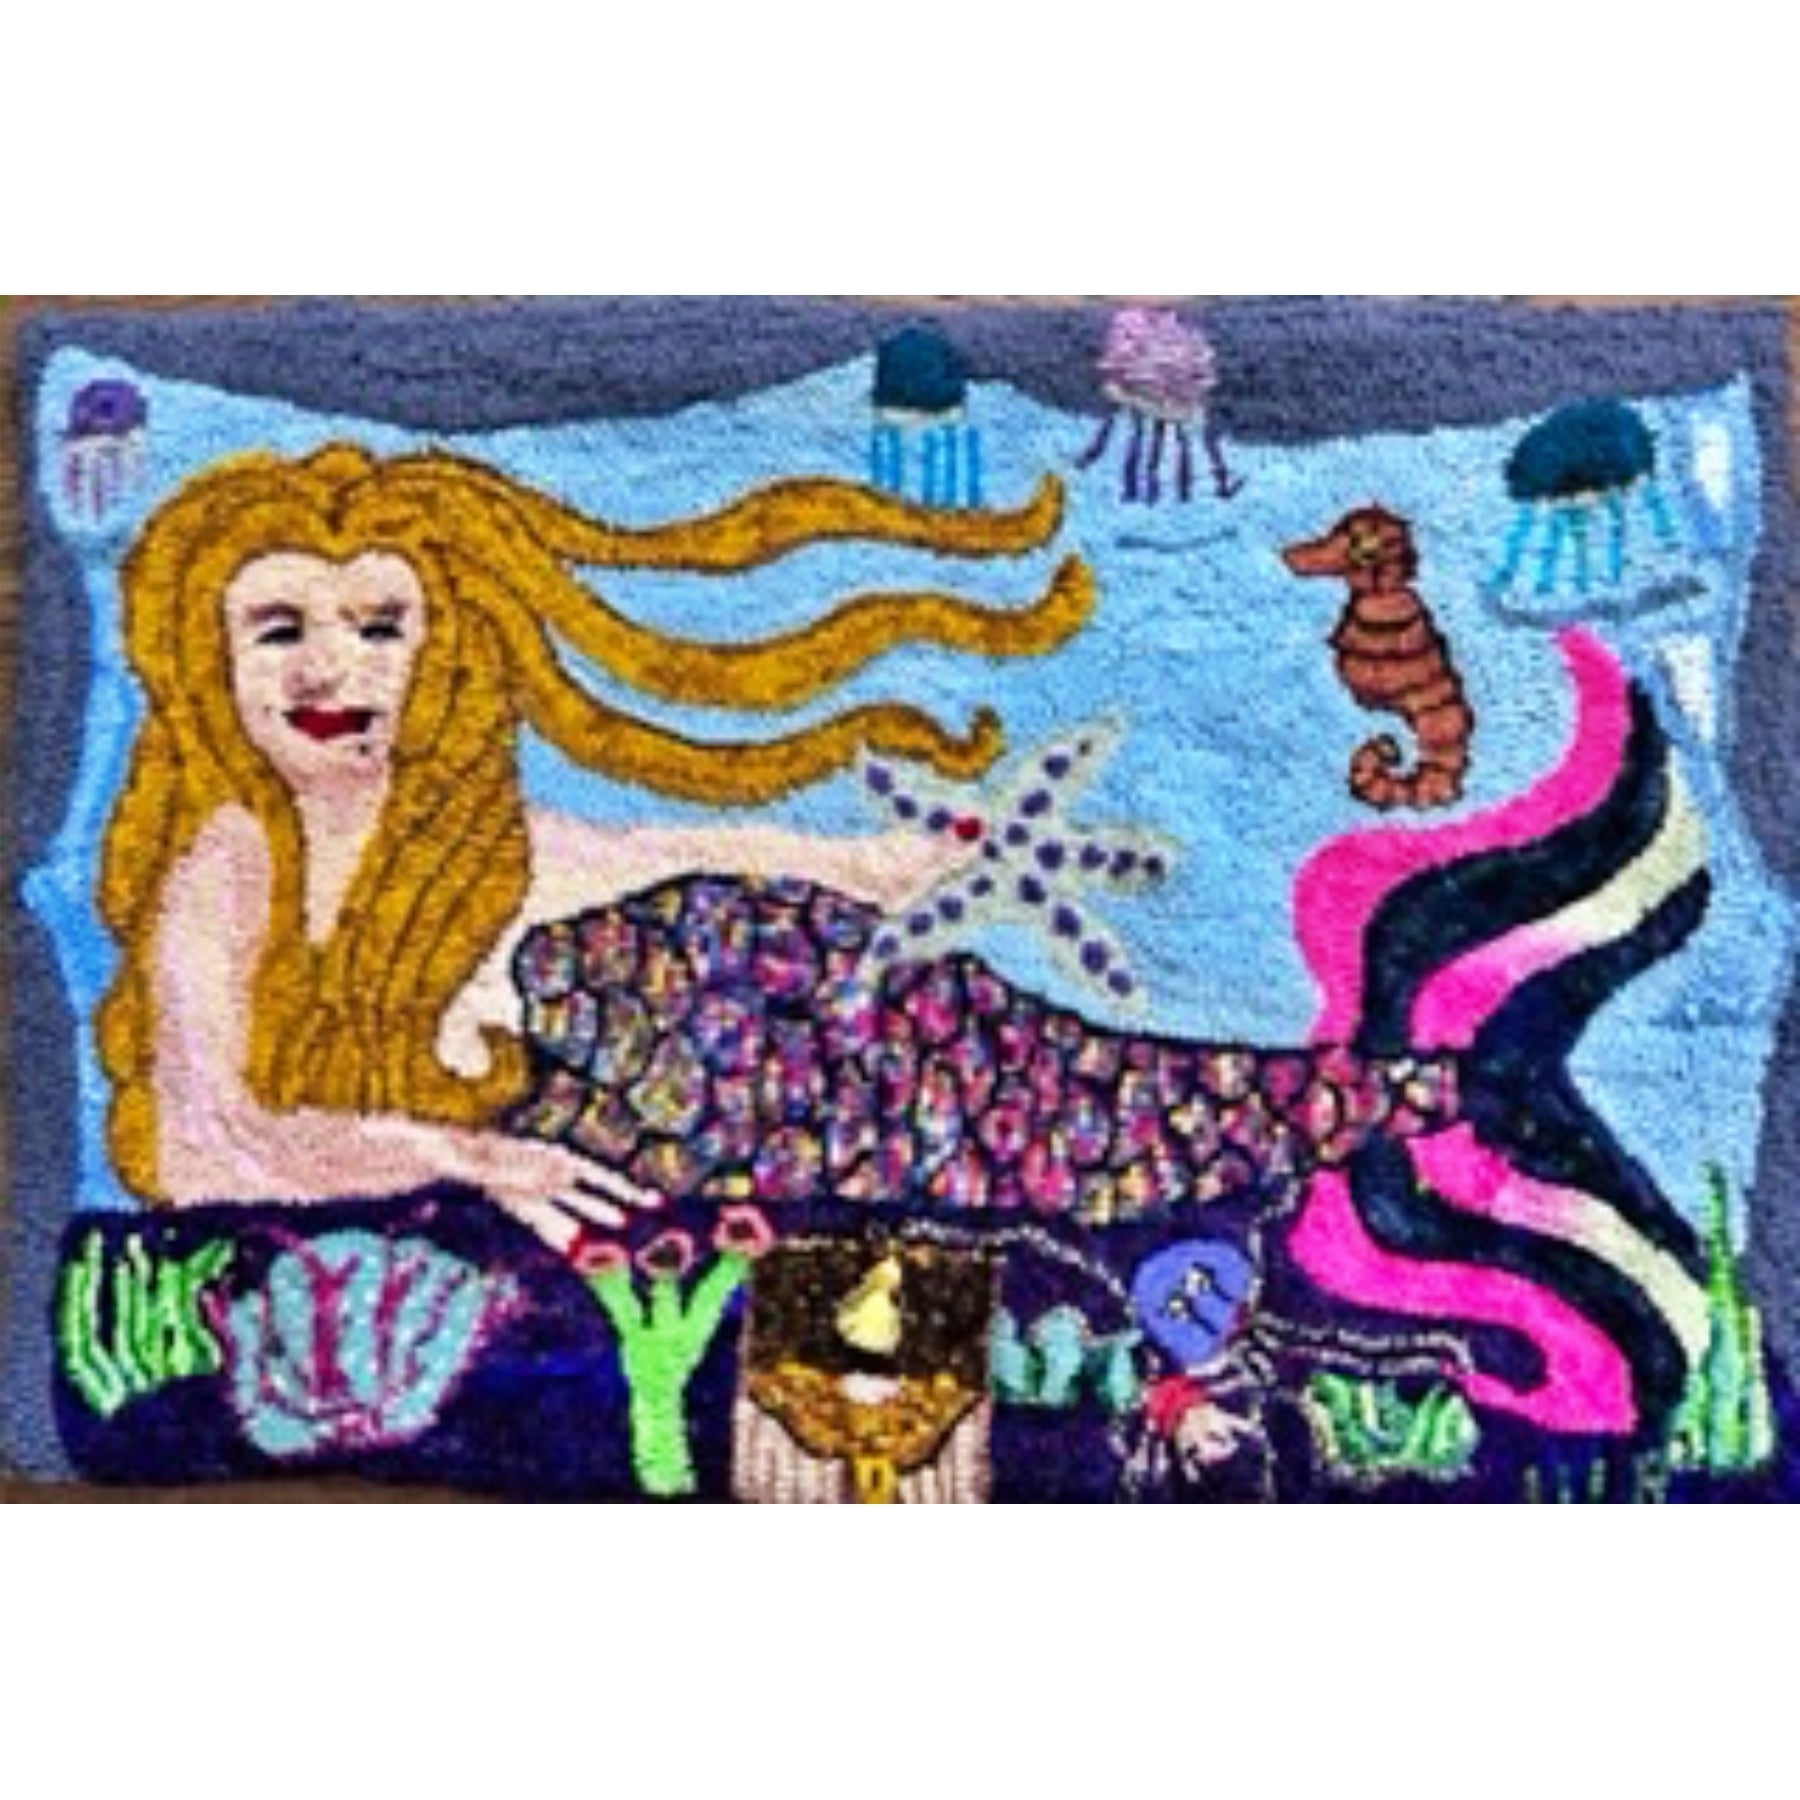 Mermaid, rug hooked by Vicki Rudolph